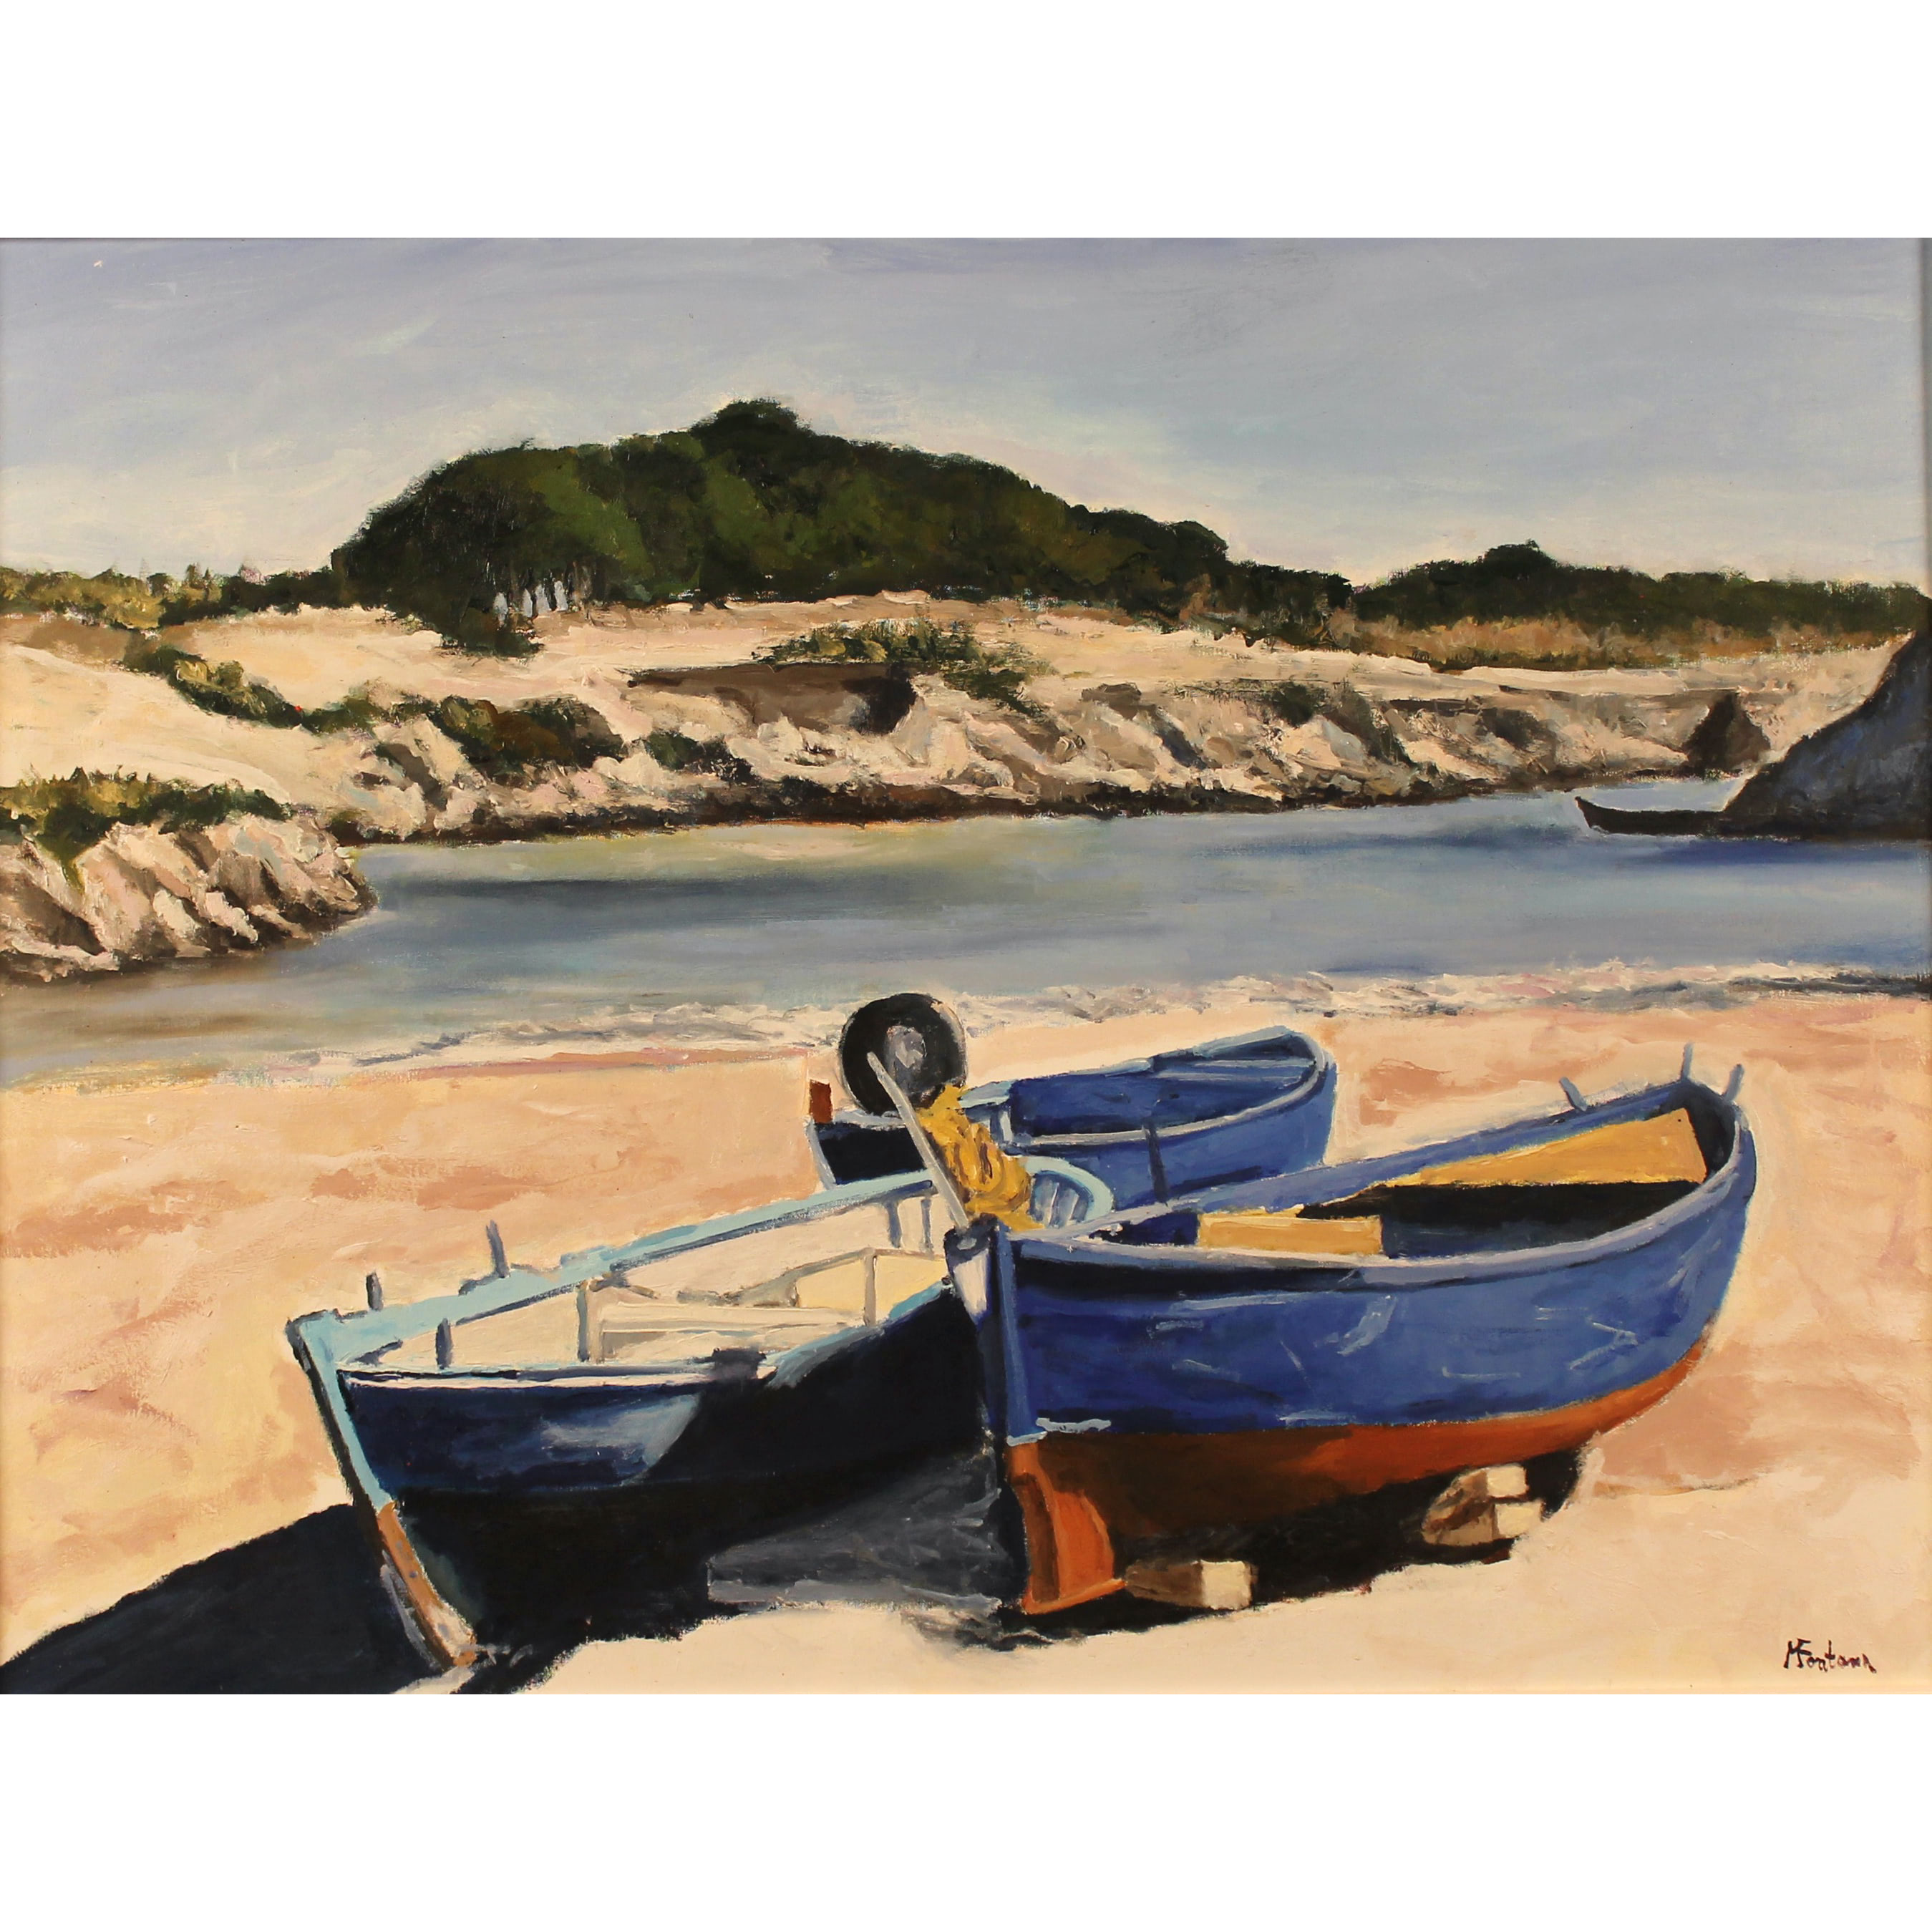 Michele Fontana (1965) "Barche da pesca a secco" - "Dry Fishing Boats"